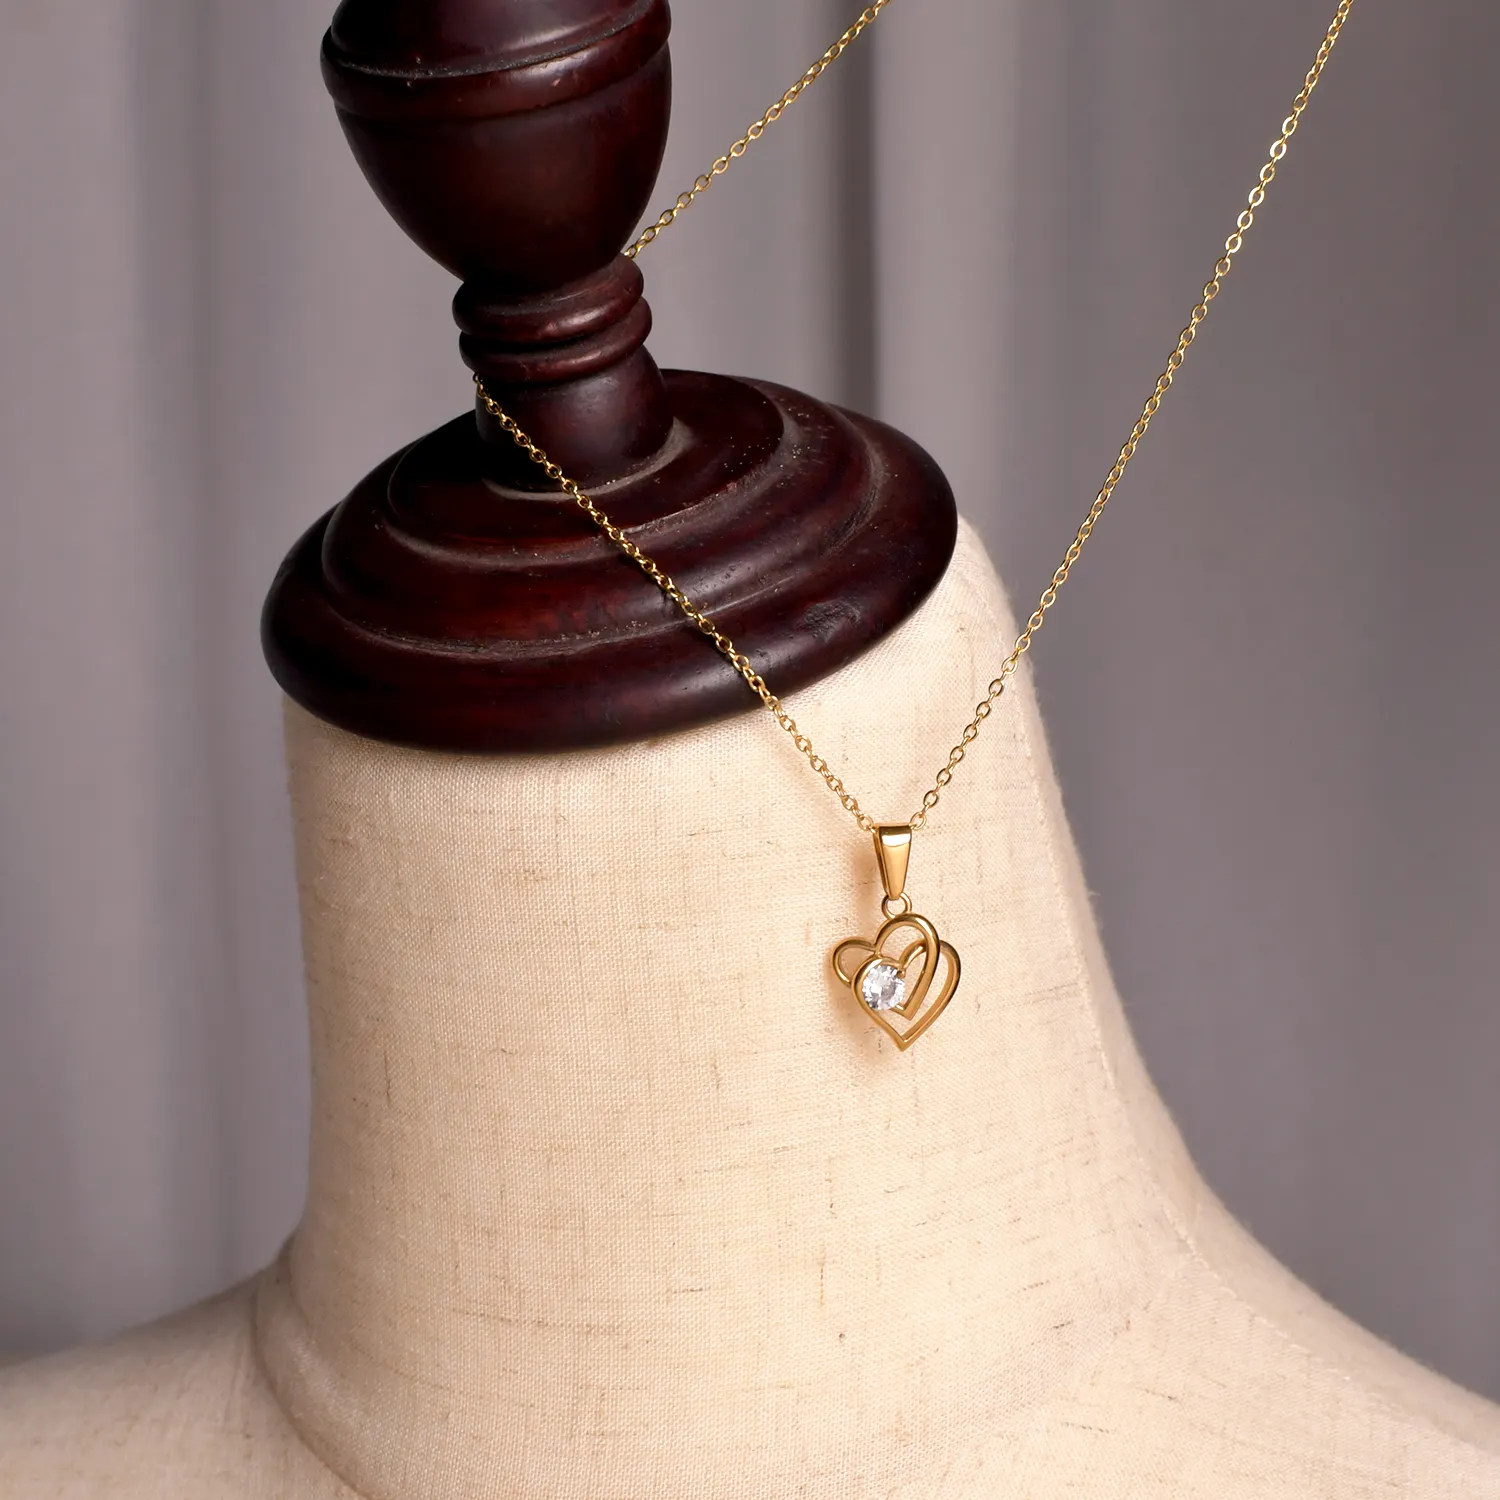 18K altın kaplama Rhinestone çift kalp kolye paslanmaz çelik PVD Charms kolye moda aksesuarları bayanlar takı için